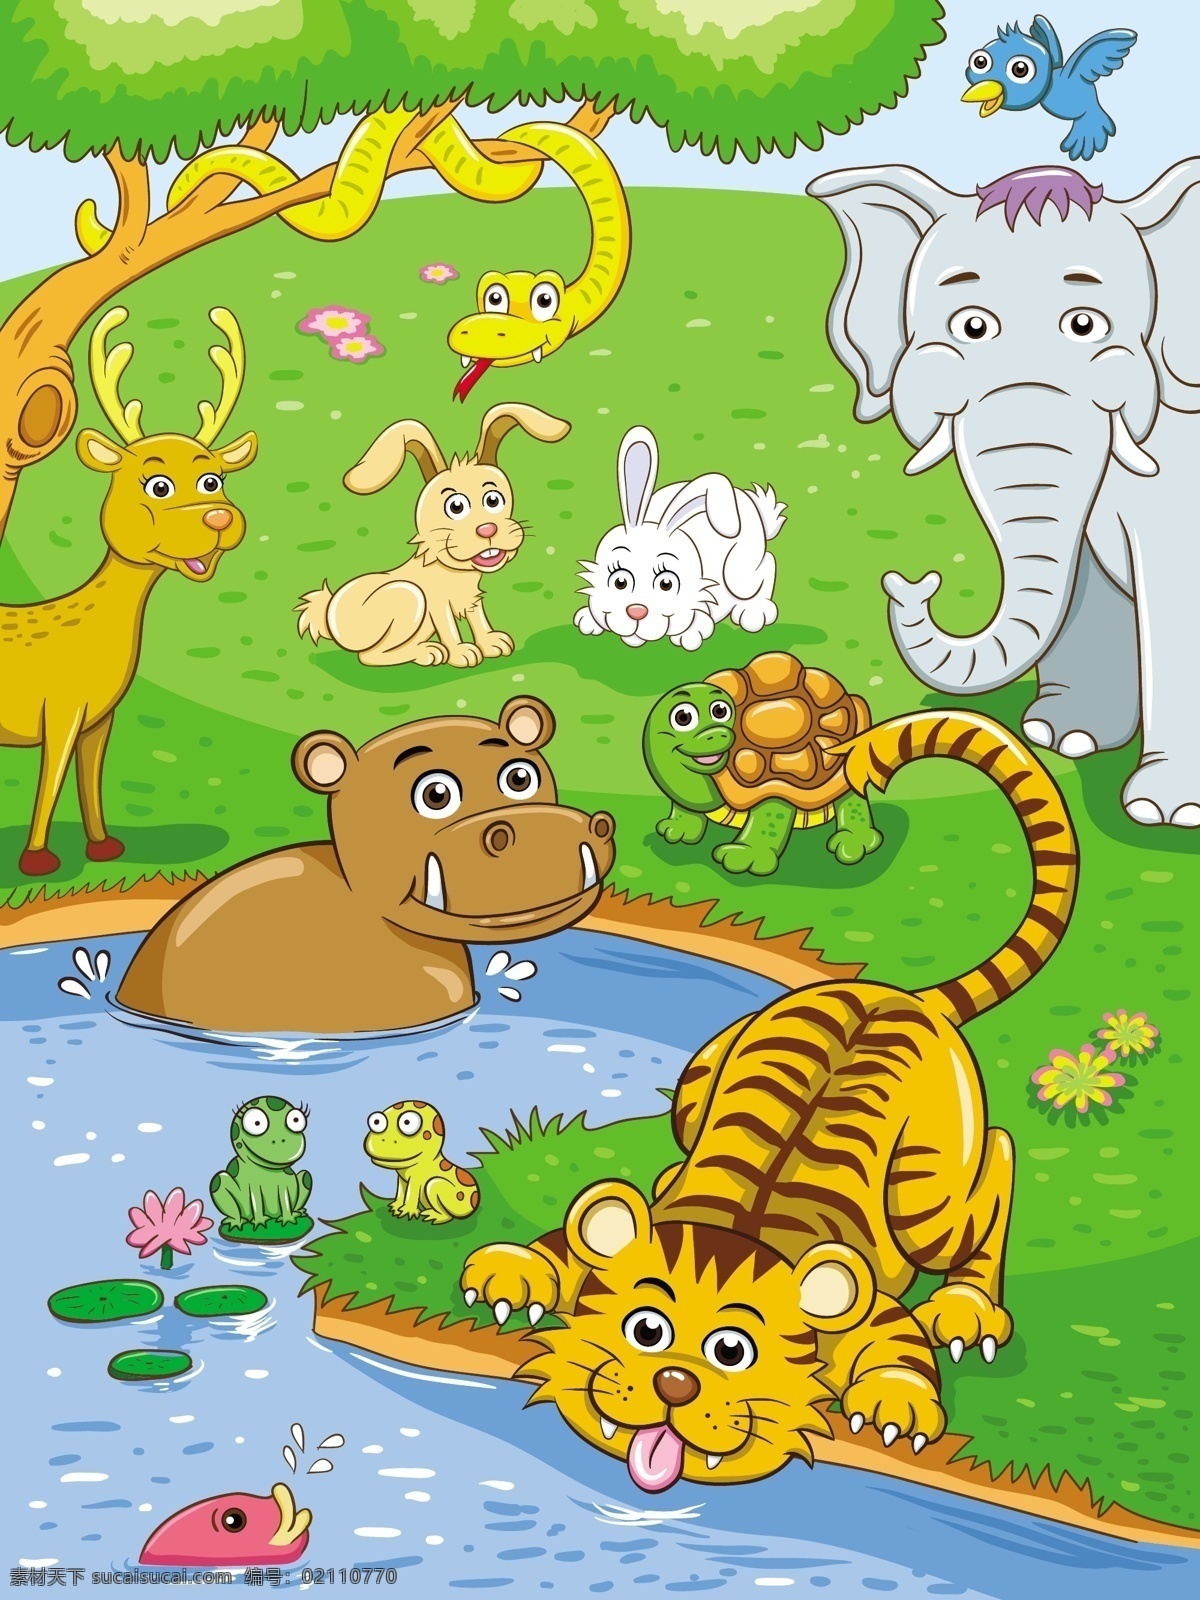 卡通动物插画 动物 卡通 动物园 幼儿园素材 可爱 卡通动物 卡通设计